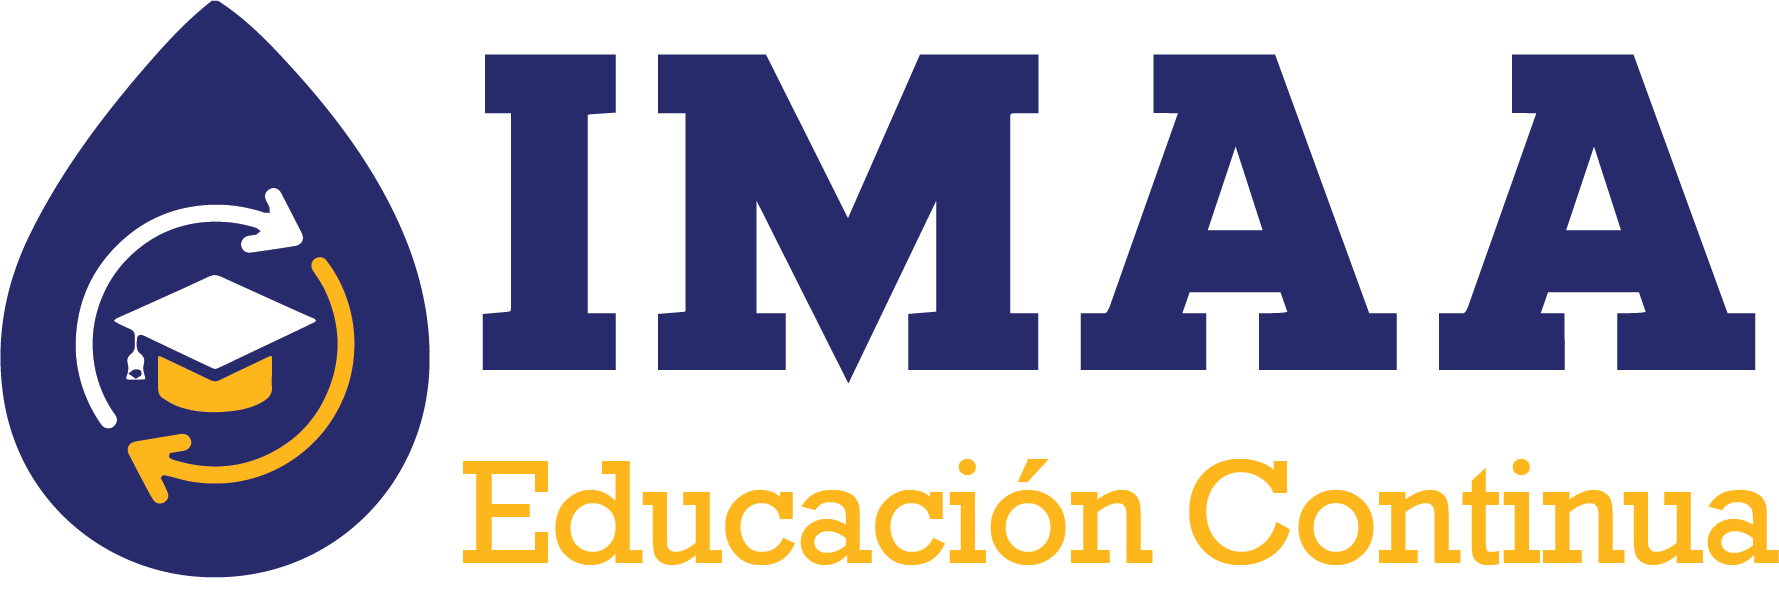 Educacion Continua IMAA